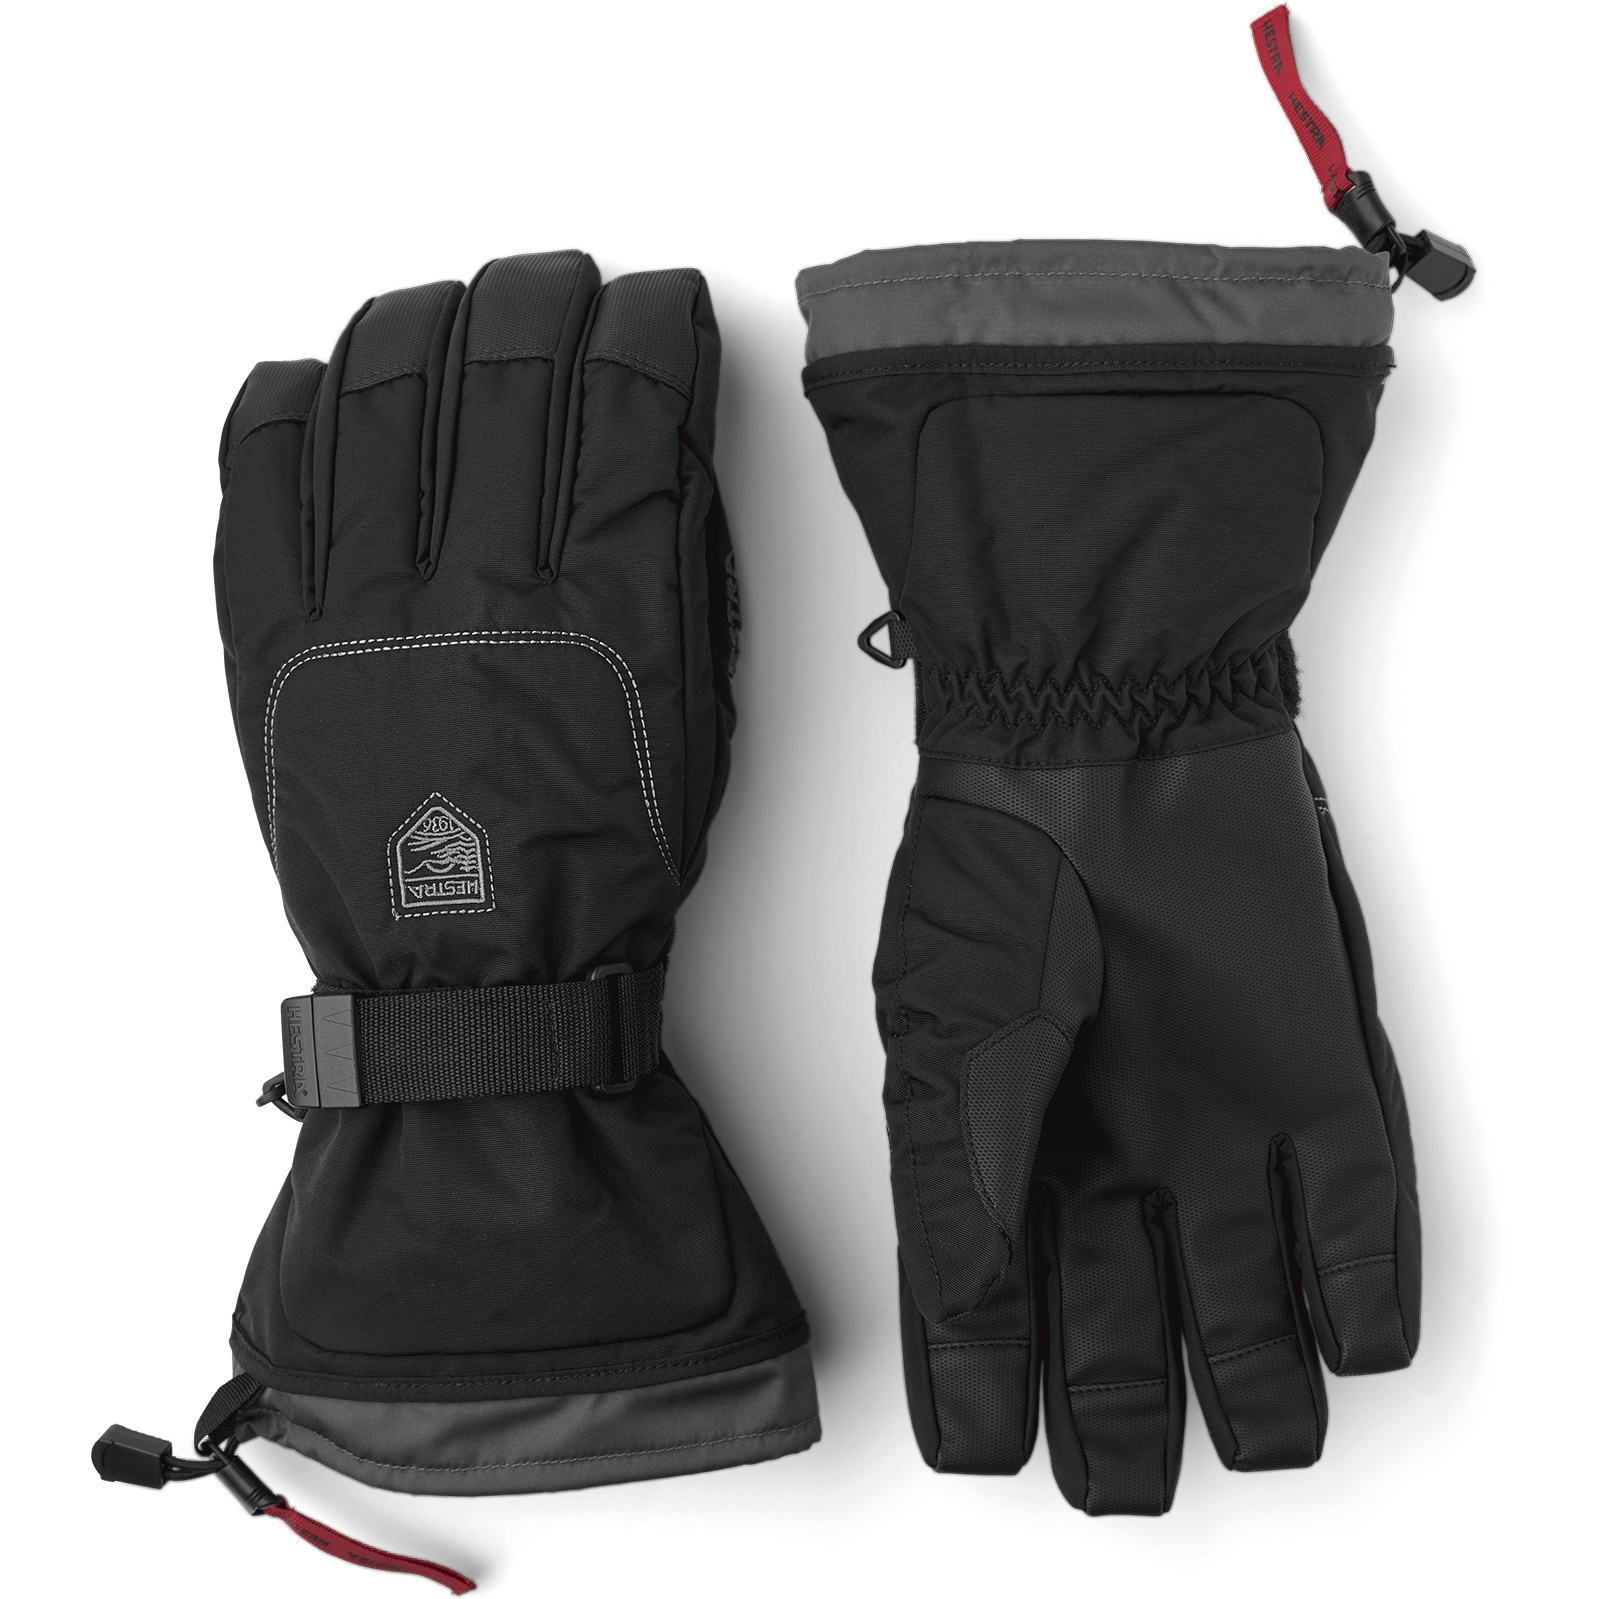 Productfoto van Hestra Gauntlet Sr. - 5 Vinger Handschoenen - black/black